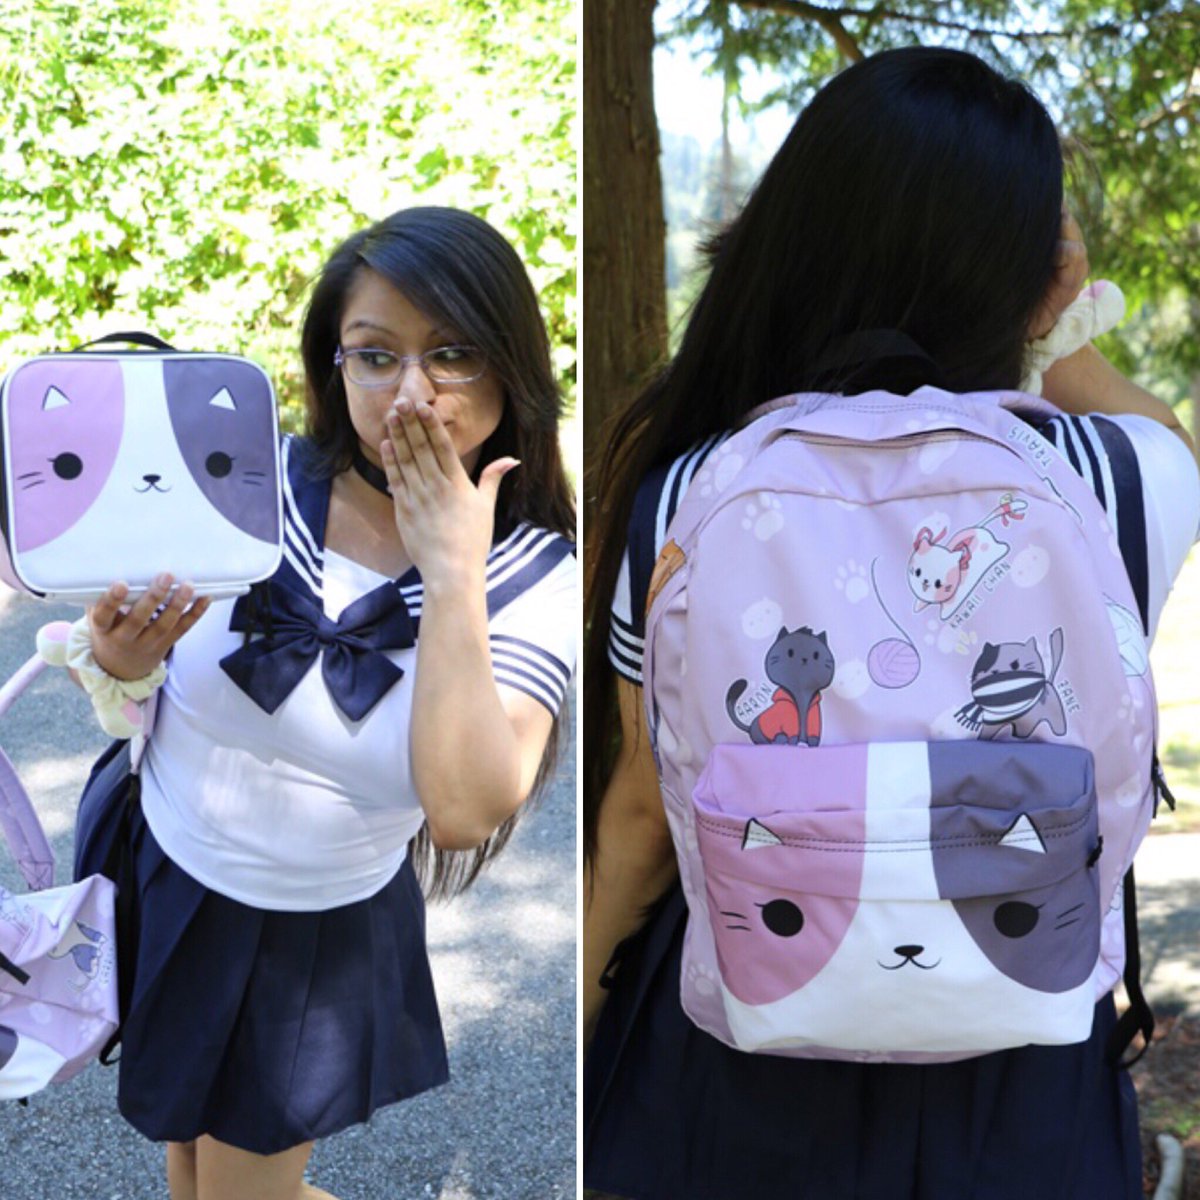 Aphmau on X: Mystreet Neko~Themed backpack and lunchbox! SUPER